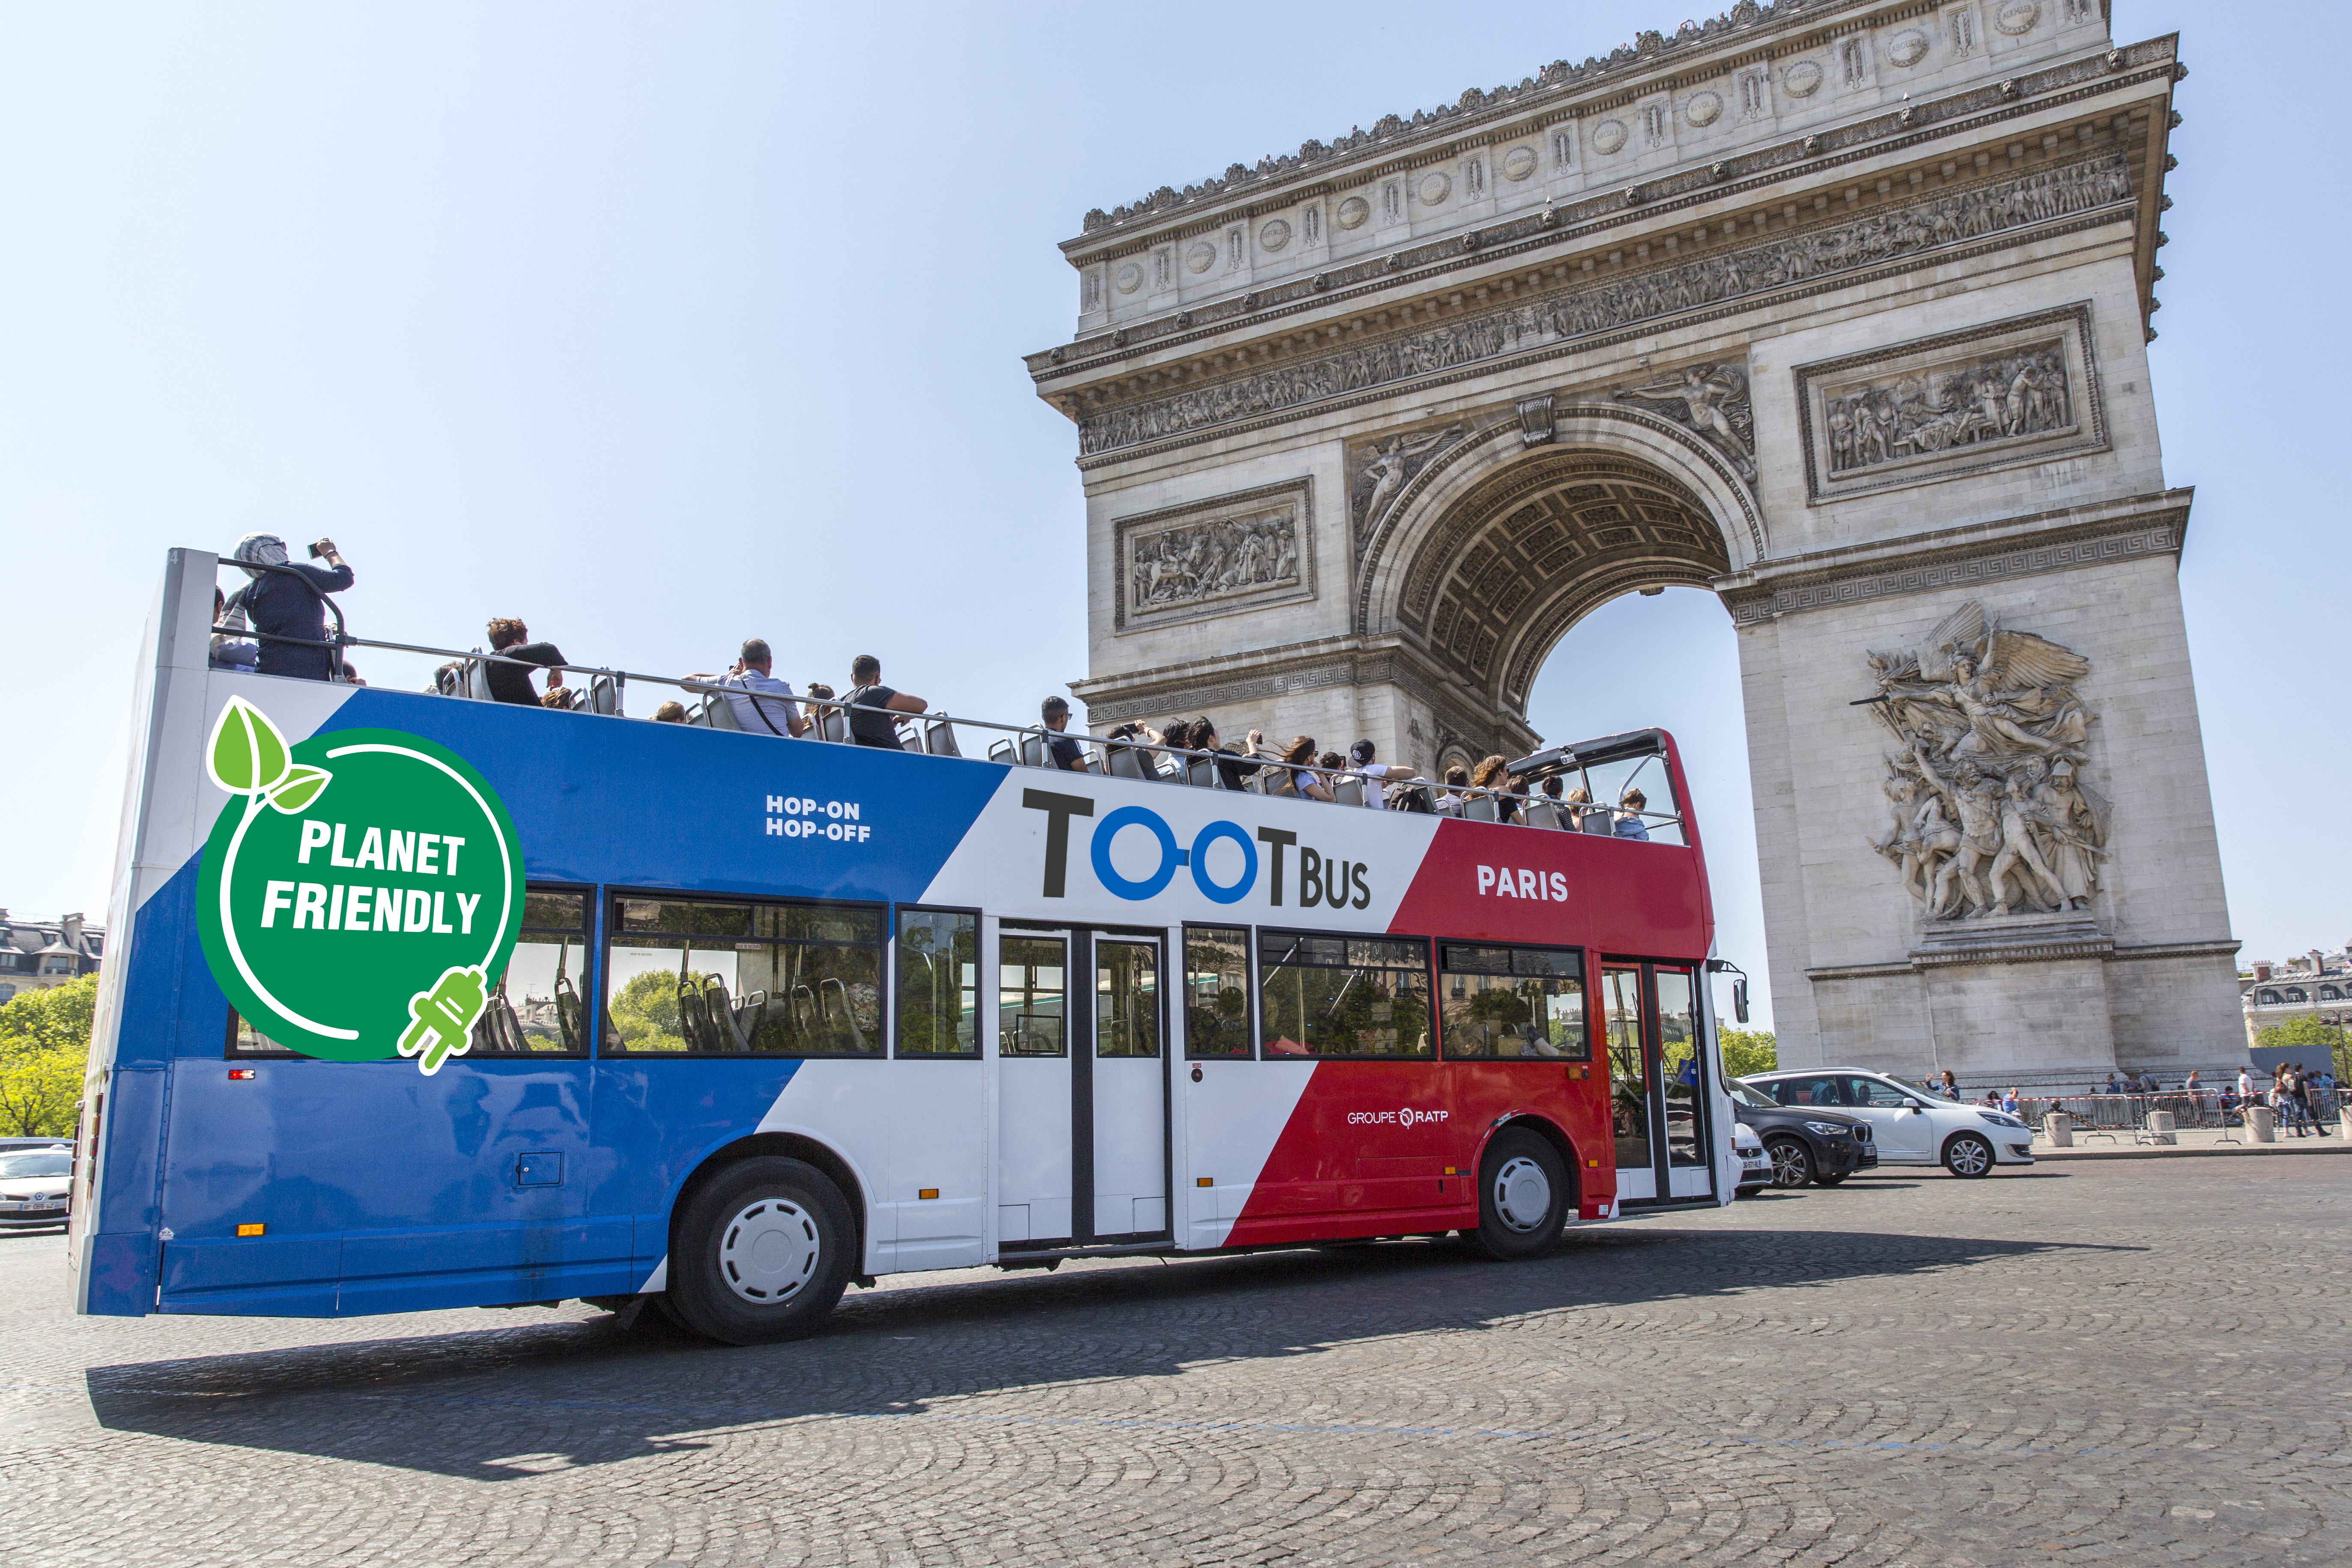 Paris Discovery : Hop-on Hop-off Tootbus Tour Paris - Paris - 